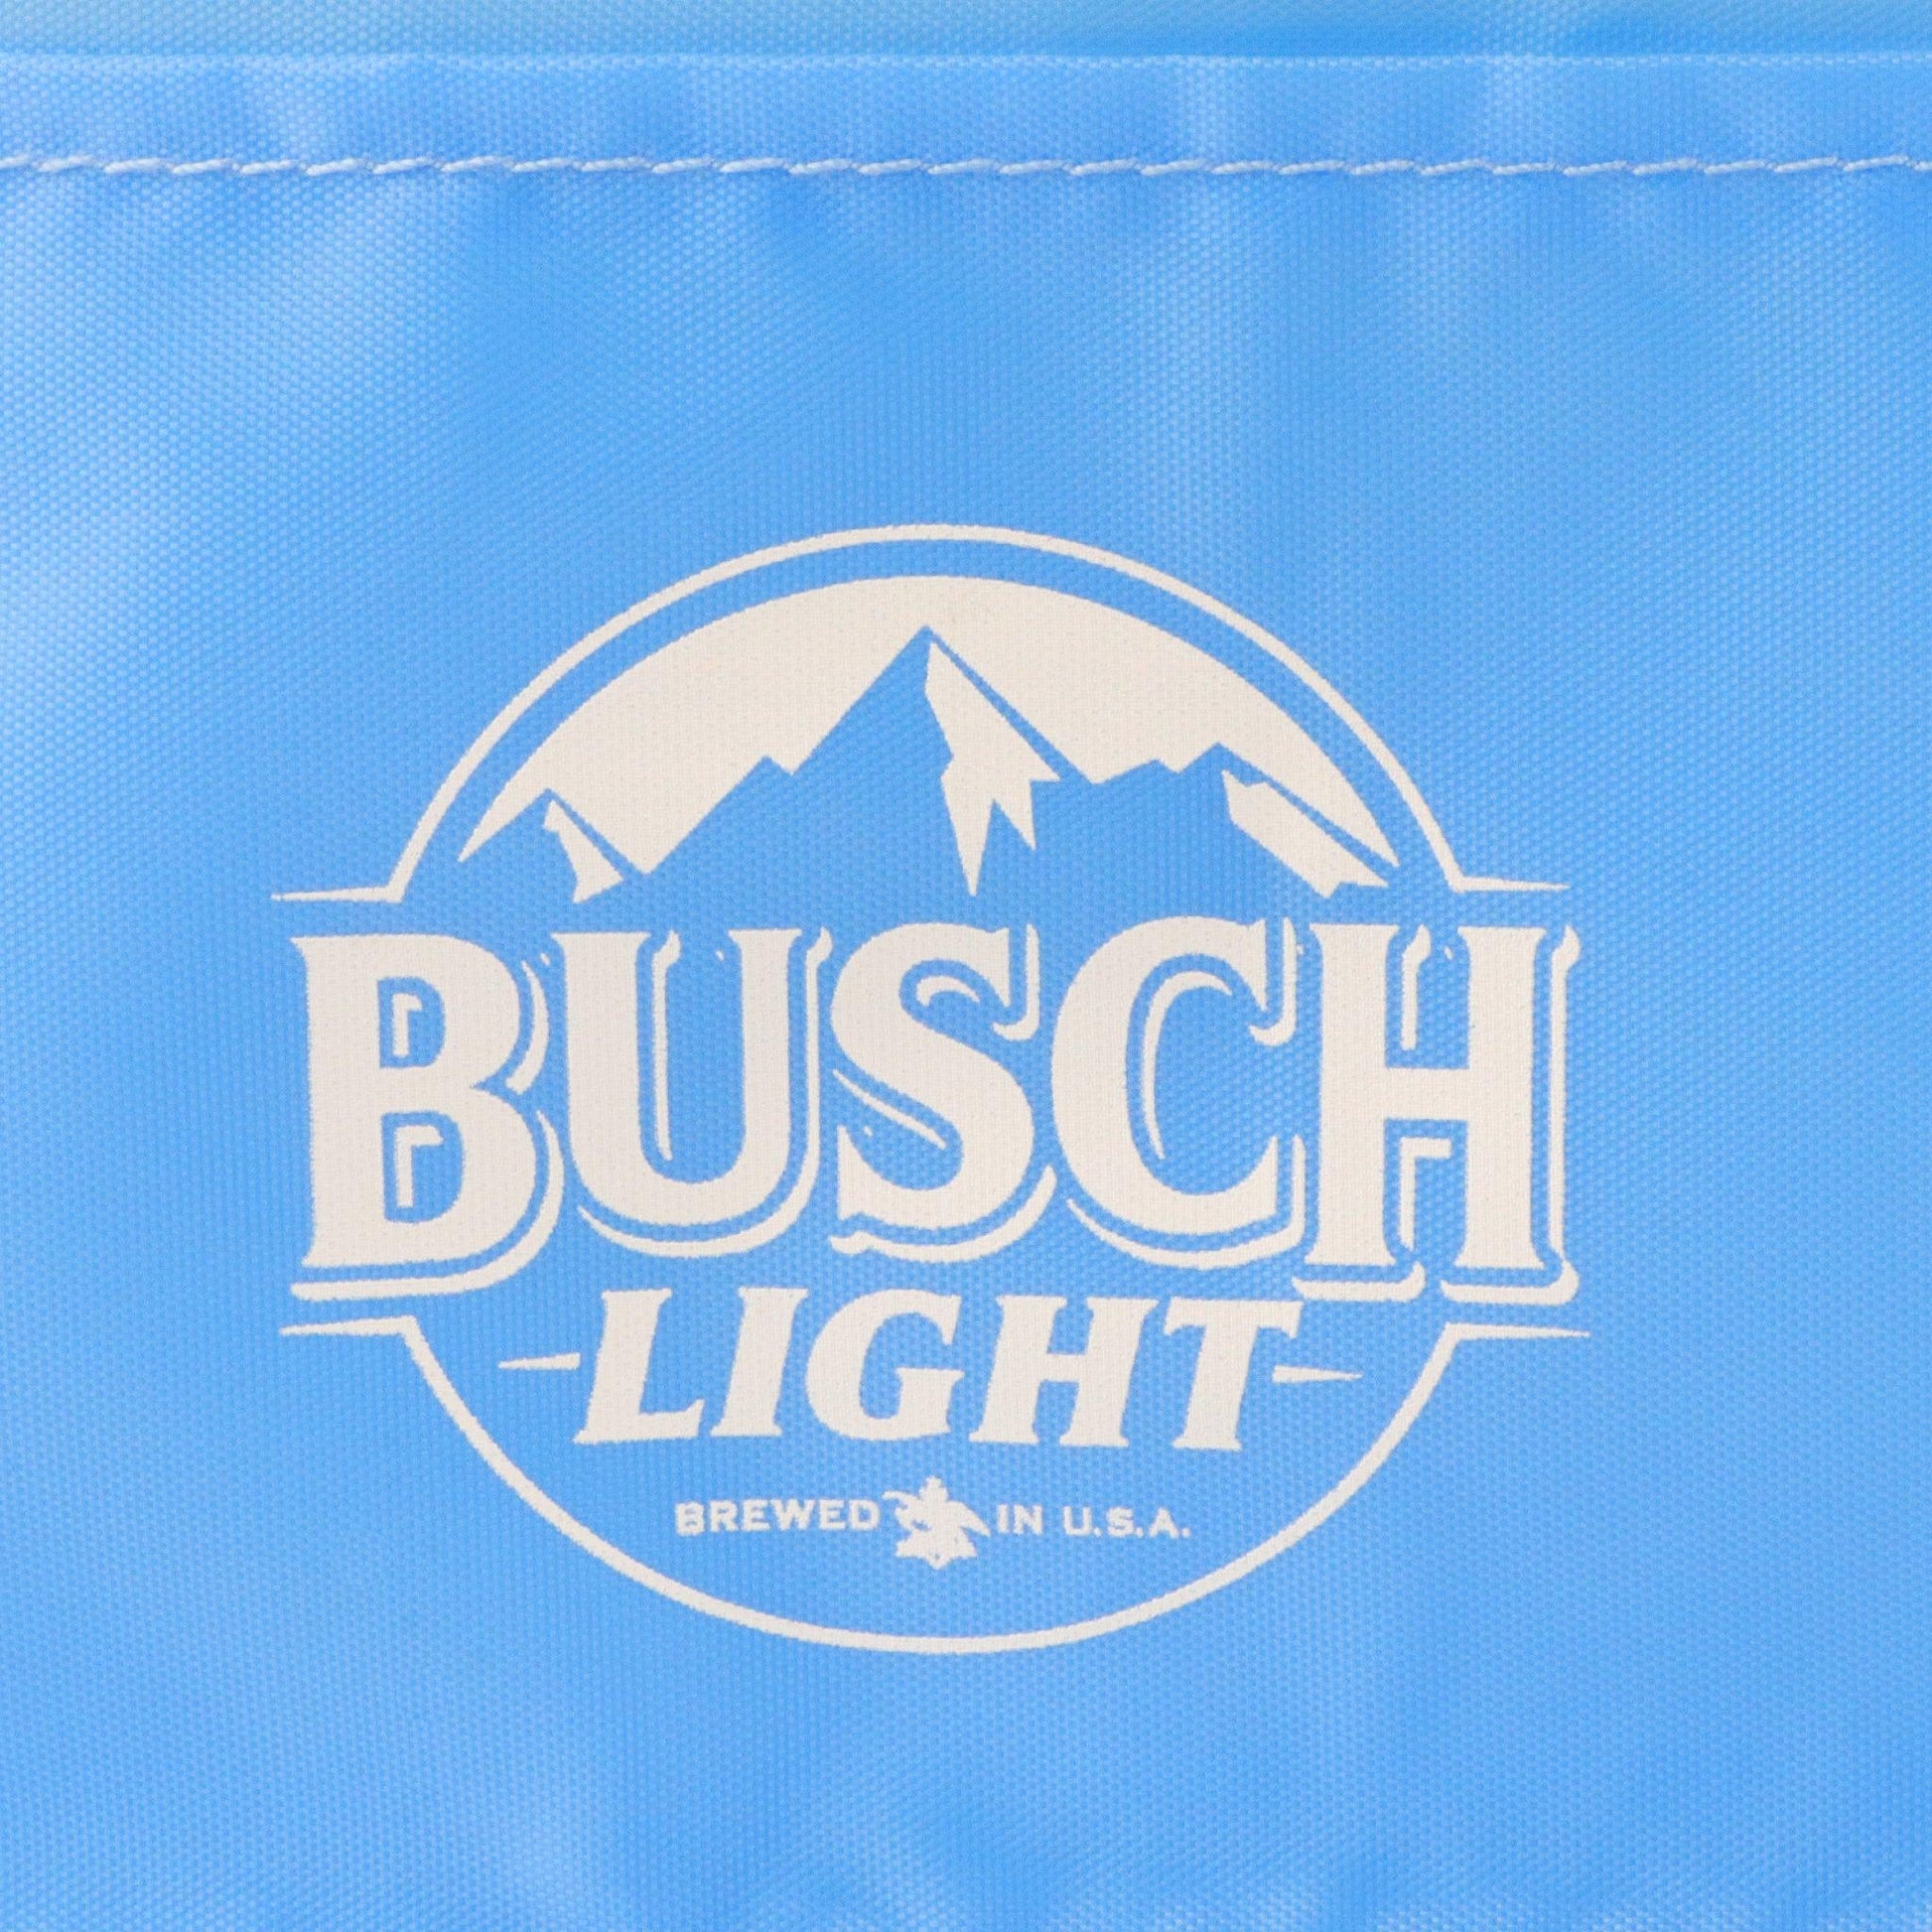 Busch Light logo detail 